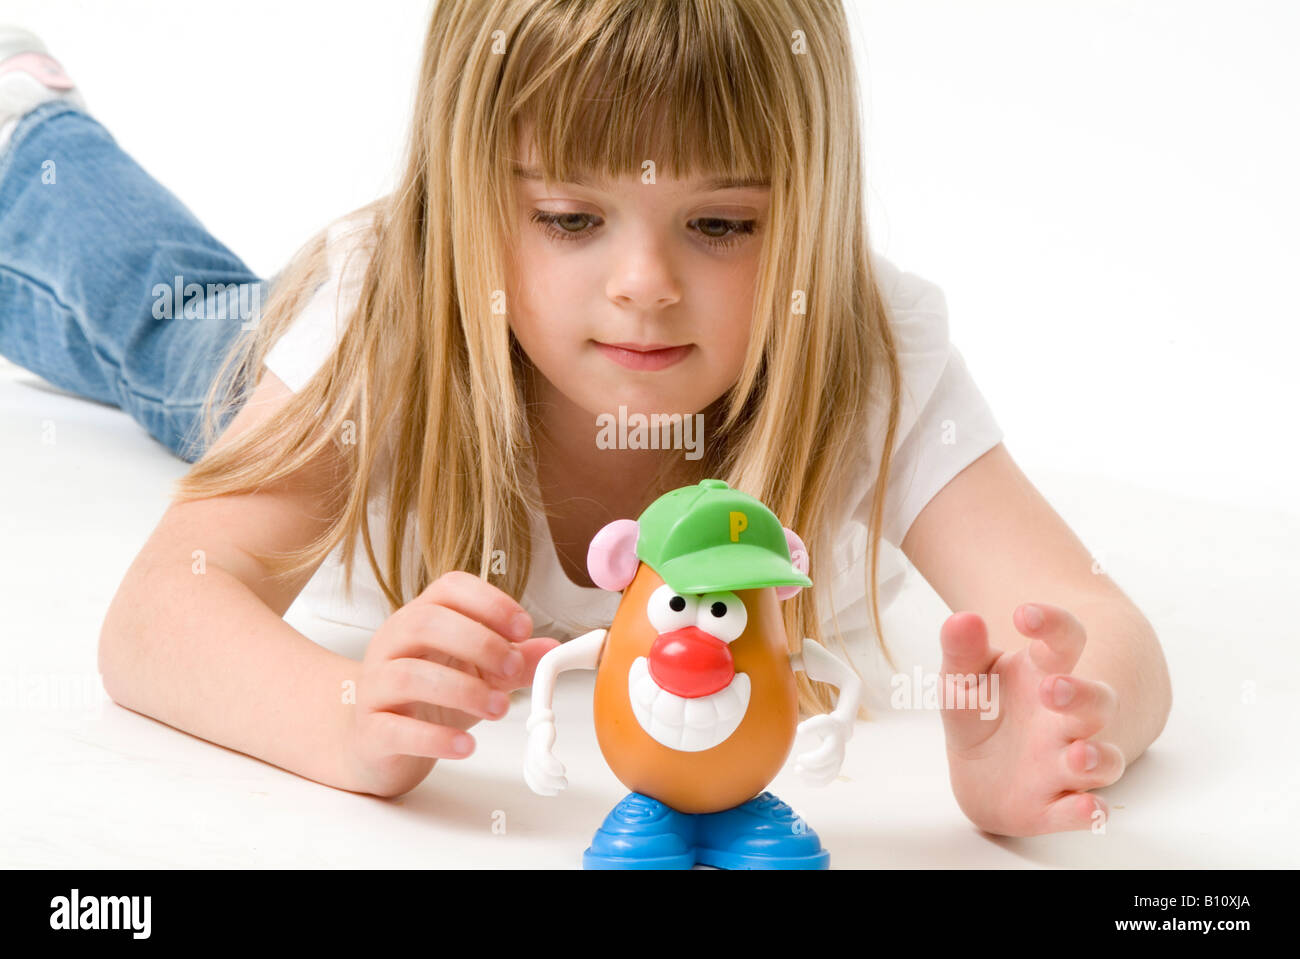 spielendes Spiel mit Herr Potato Head Potetohead Spielzeug Auge Hand Cordination lernen lernen Kind Kind Kind Mädchen pädagogische Ausbildung Stockfoto